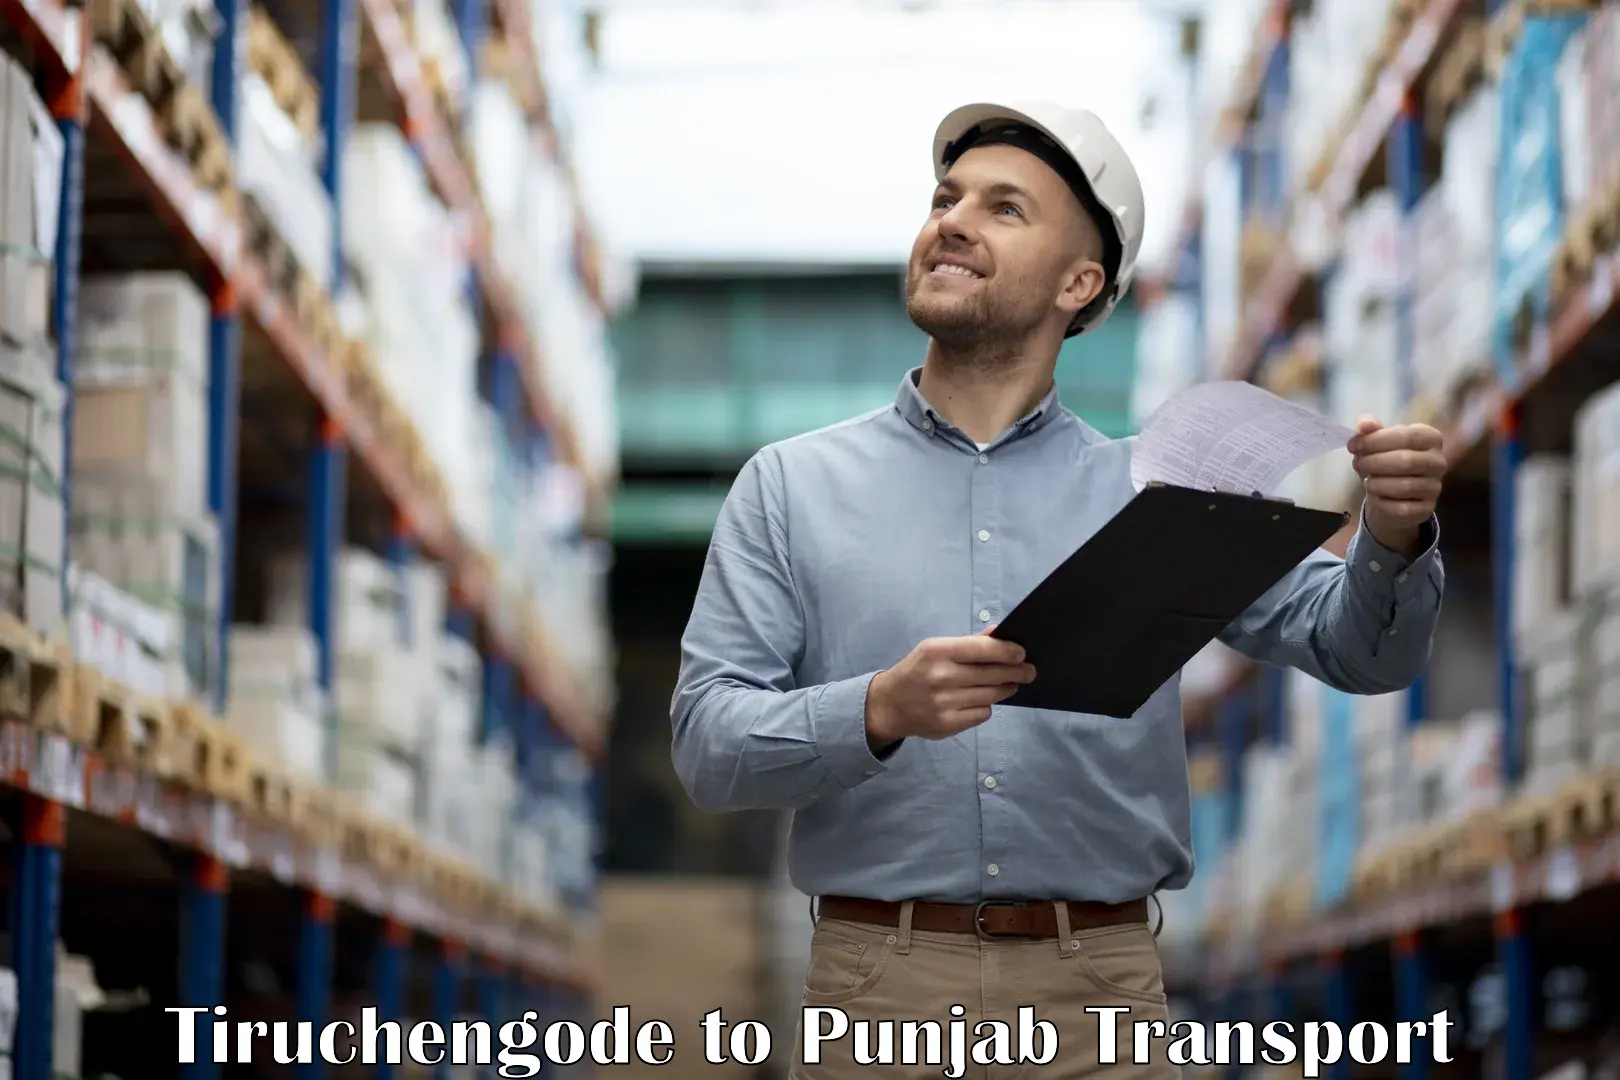 Lorry transport service Tiruchengode to Punjab